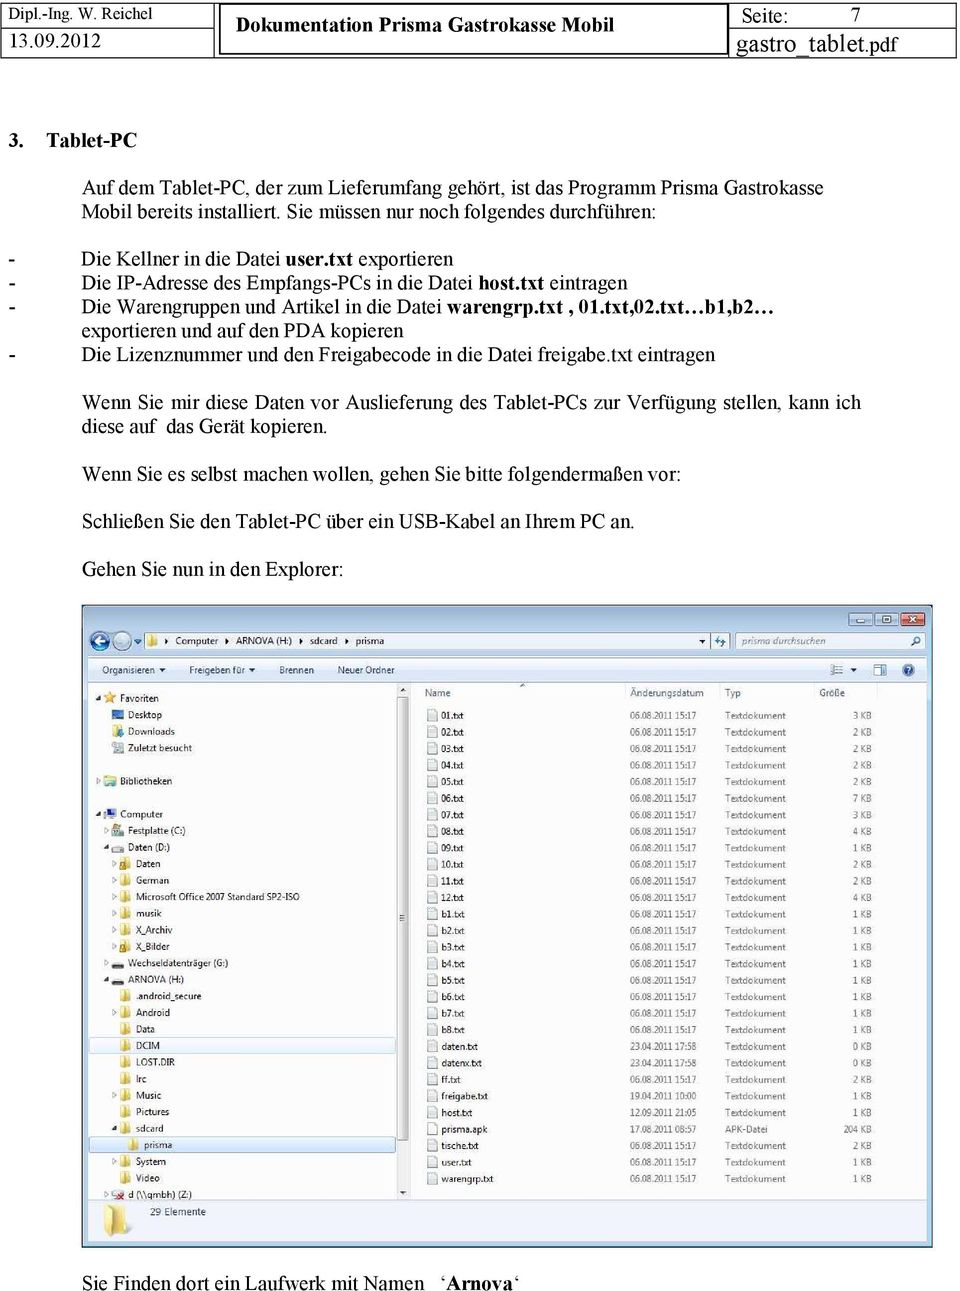 txt eintragen - Die Warengruppen und Artikel in die Datei warengrp.txt, 01.txt,02.txt b1,b2 exportieren und auf den PDA kopieren - Die Lizenznummer und den Freigabecode in die Datei freigabe.